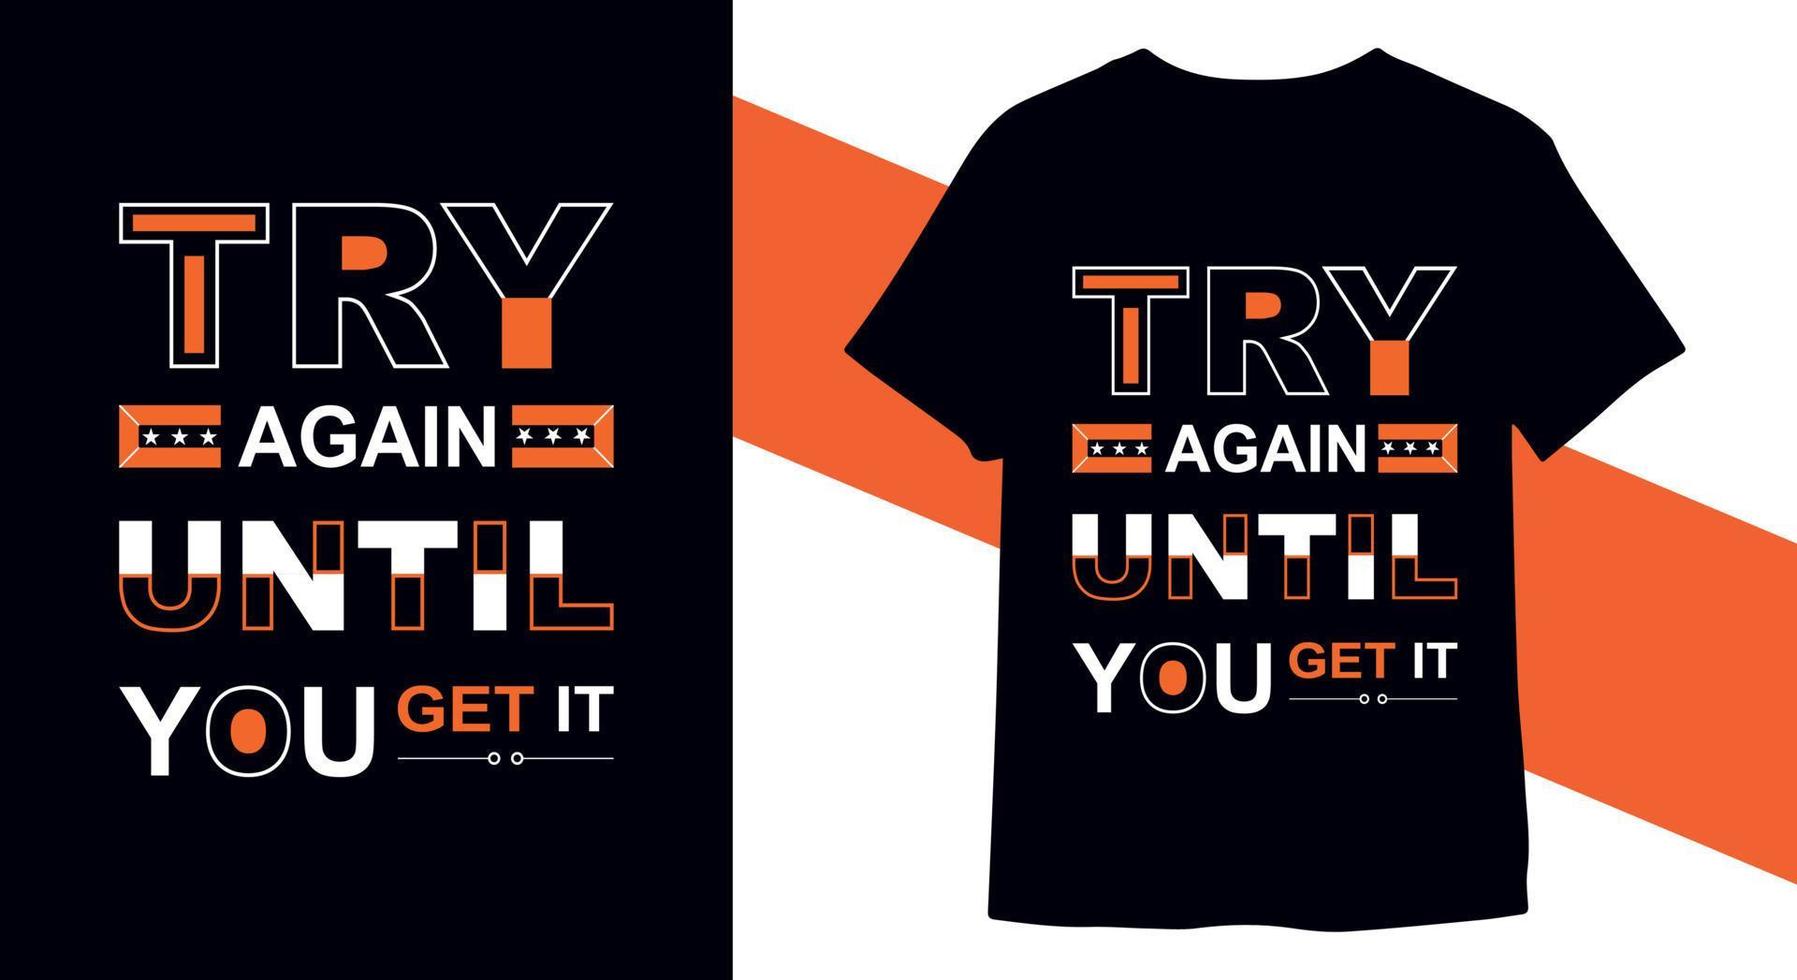 Prova om igen fram tills du skaffa sig Det. inspirera citat t-shirt design vektor mall för skriva ut redo